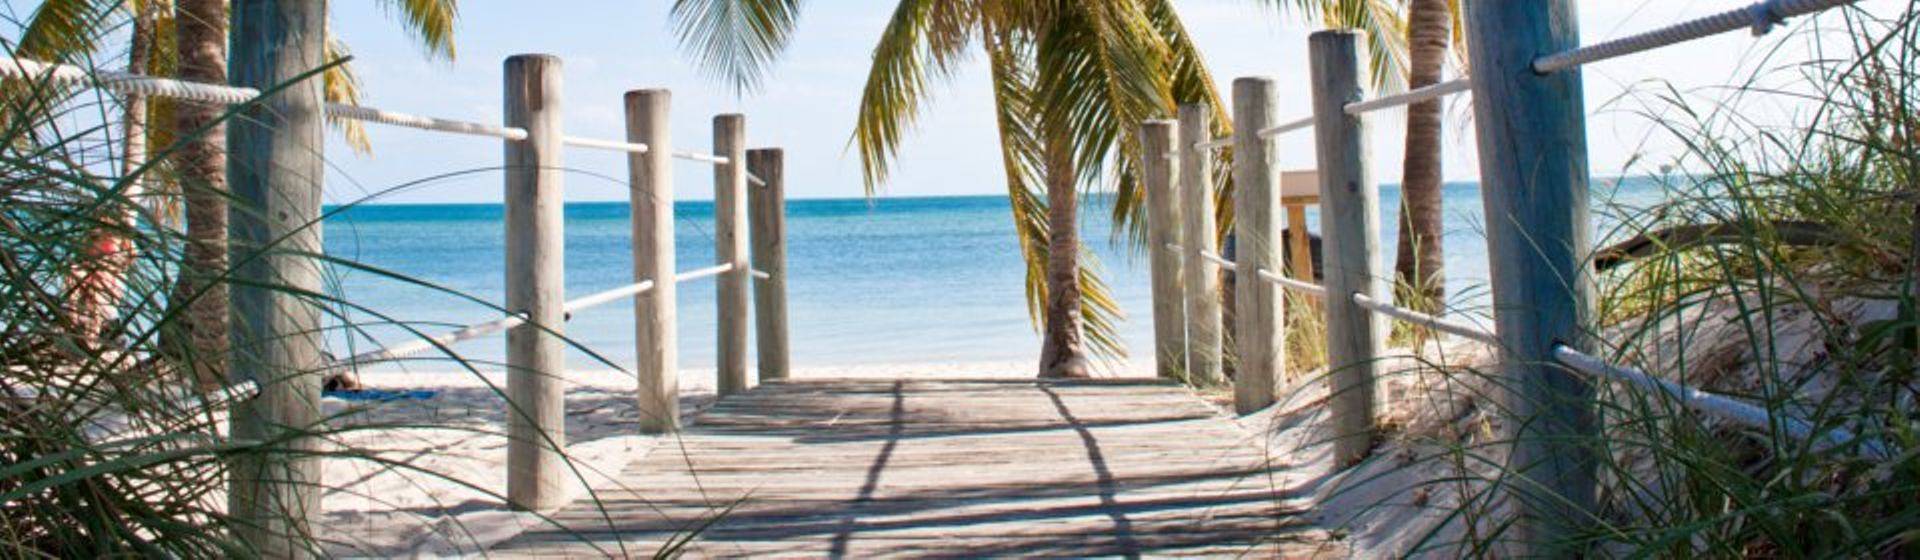 Holidays to Key West Image